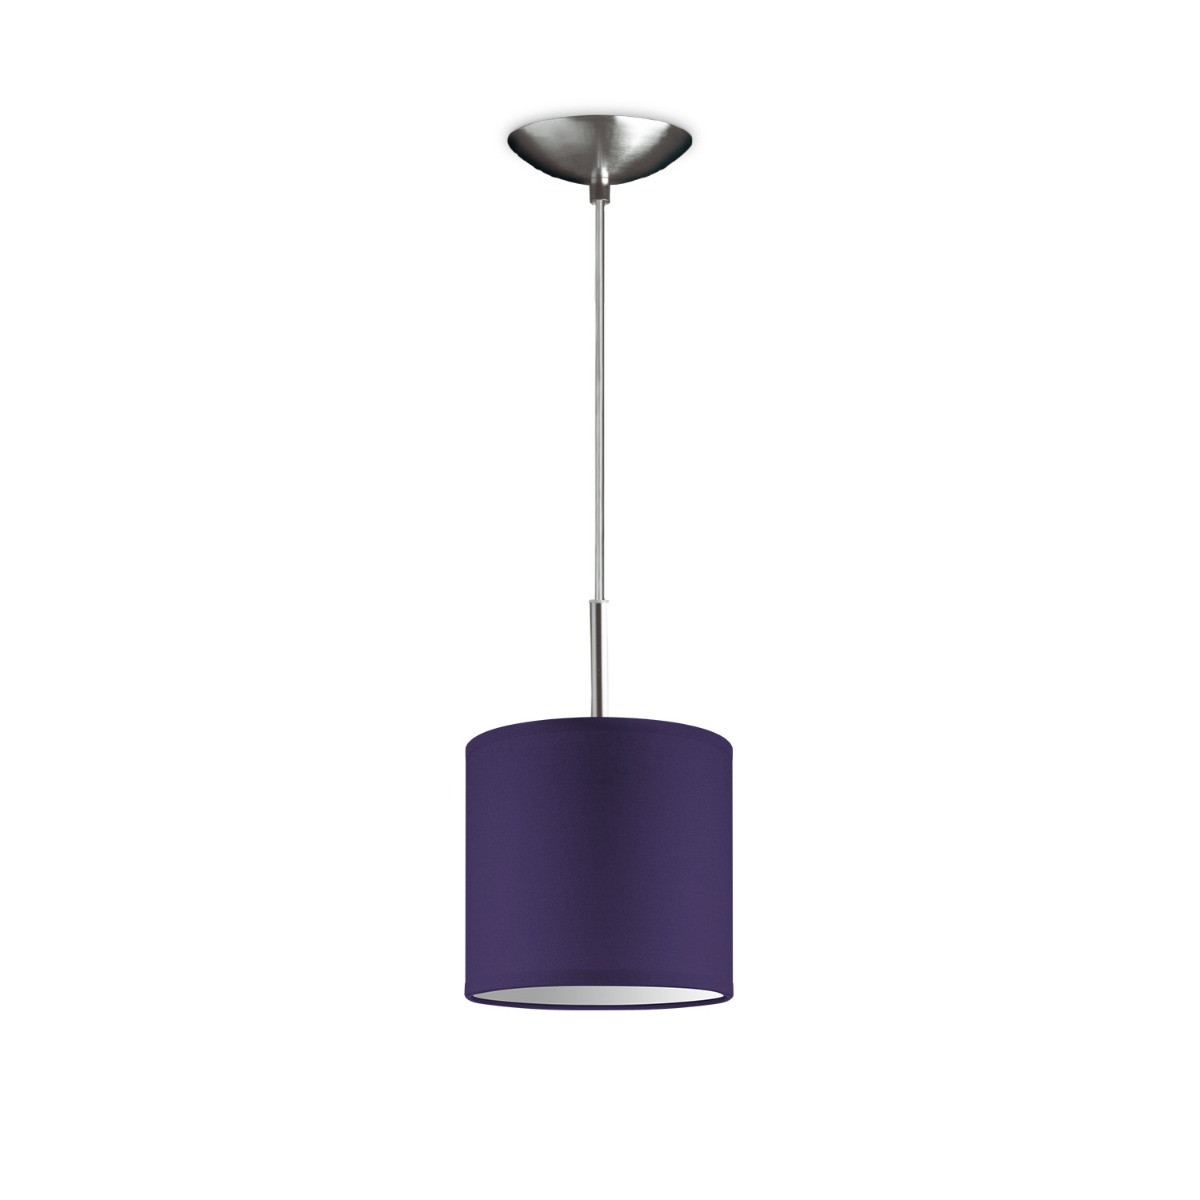 Light depot - hanglamp tube deluxe bling Ø 16 cm - paars - Outlet